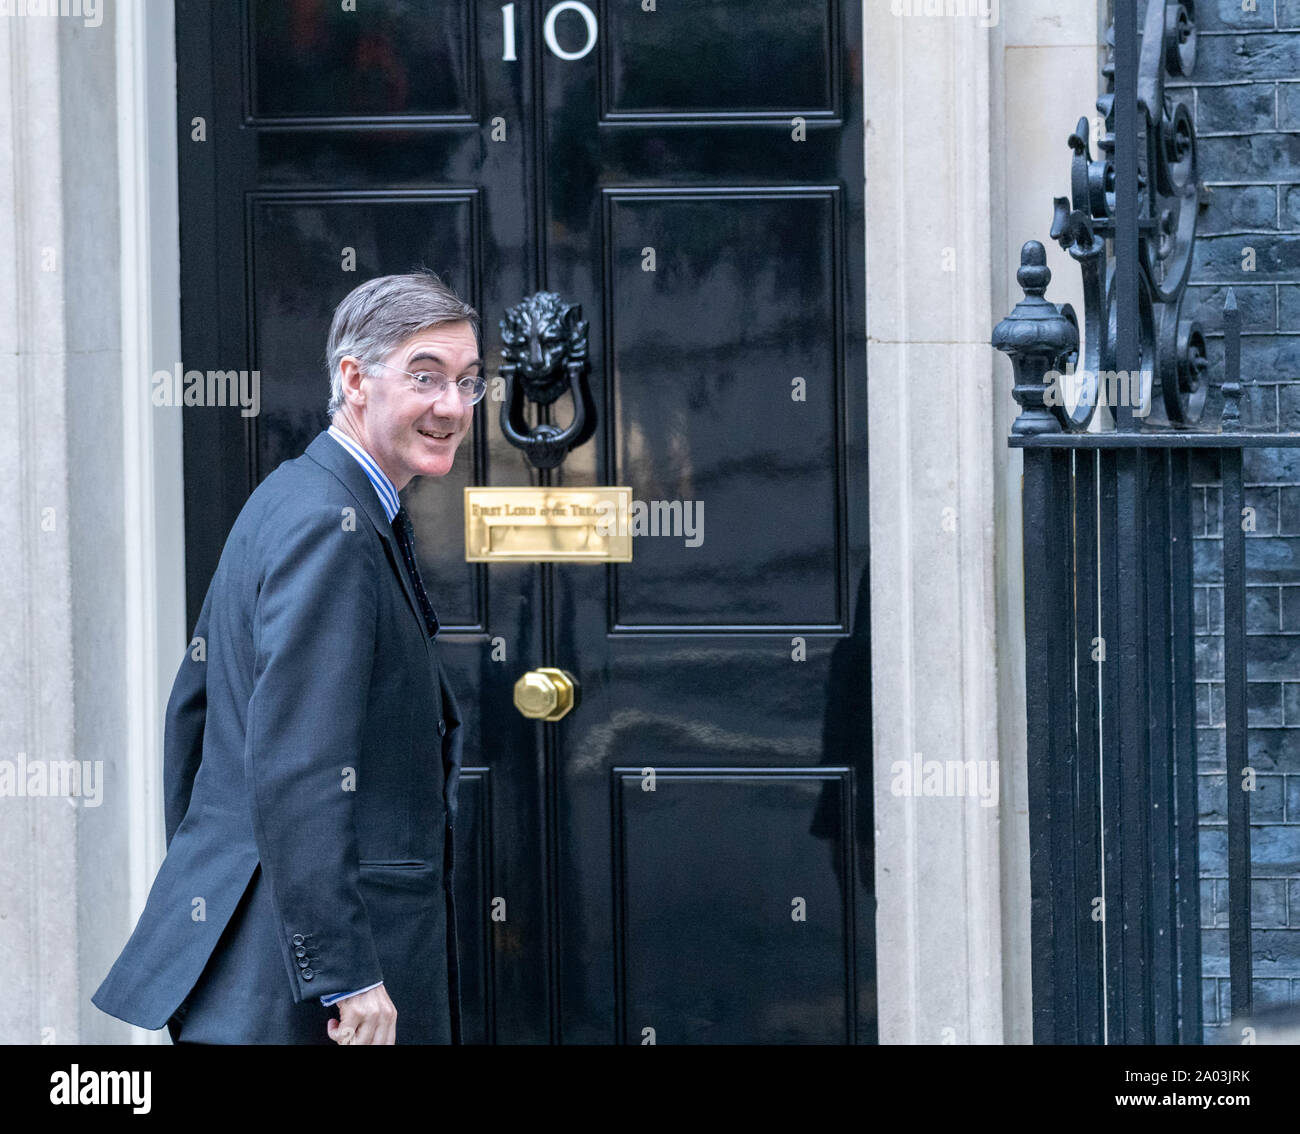 London UK 19. September 2019, Jakob Rees-Mogg MP PC Führer des Unterhauses kommt an bei 10 Downing Street, London Credit Ian Davidson/Alamy leben Nachrichten Stockfoto